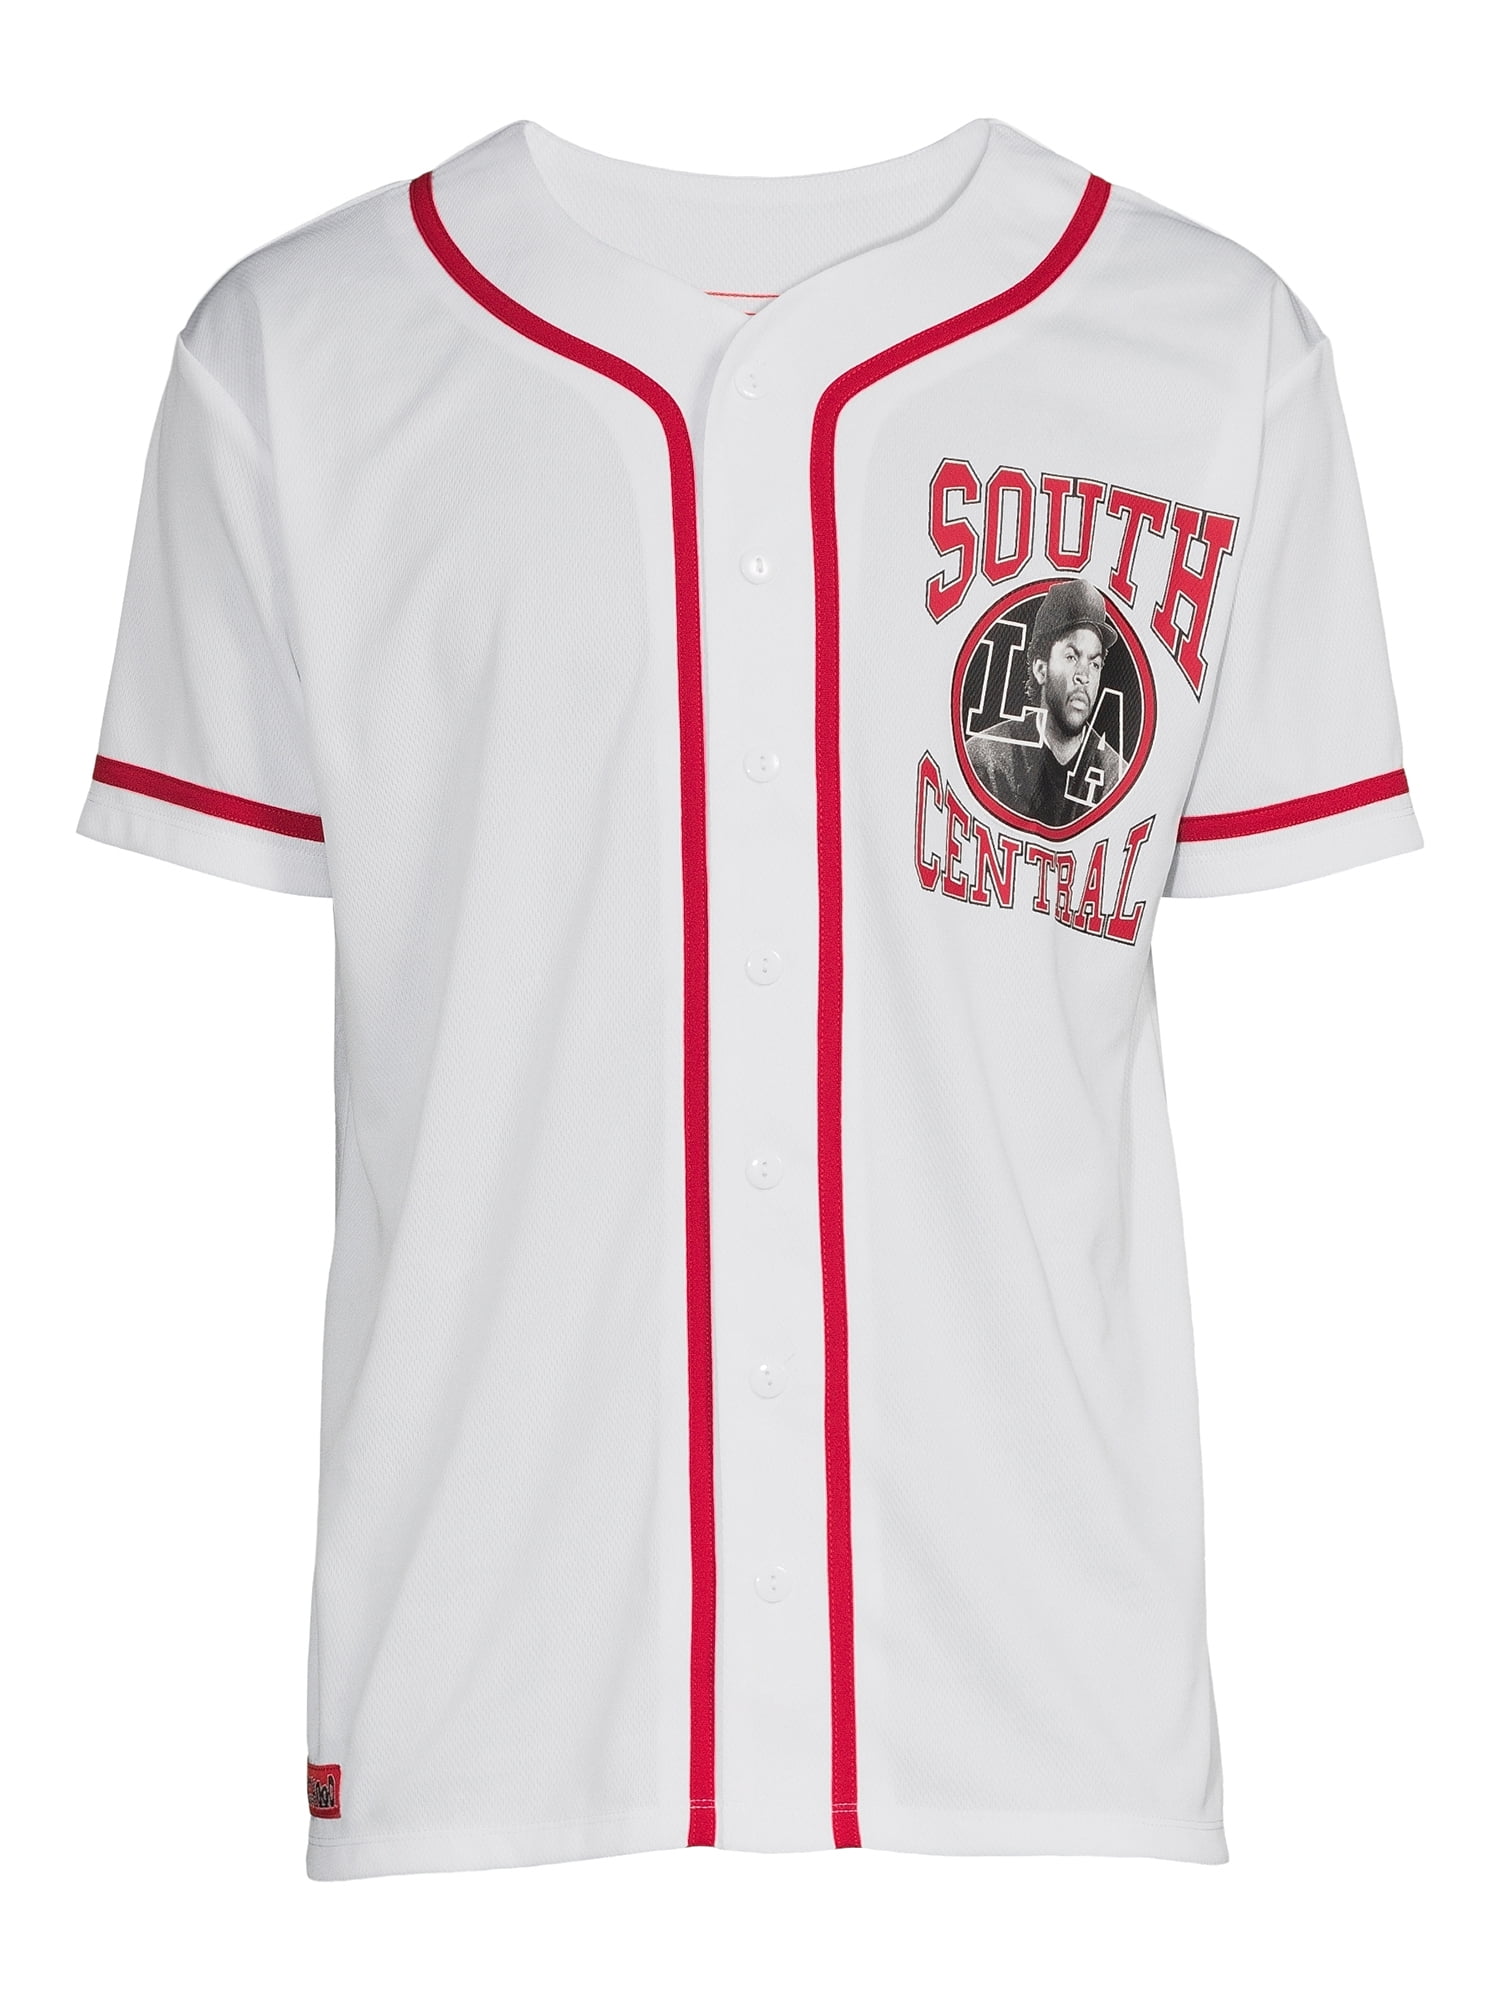 Boyz N The Hood Men's Baseball Jersey, Sizes S-2xl, Size: Large, White